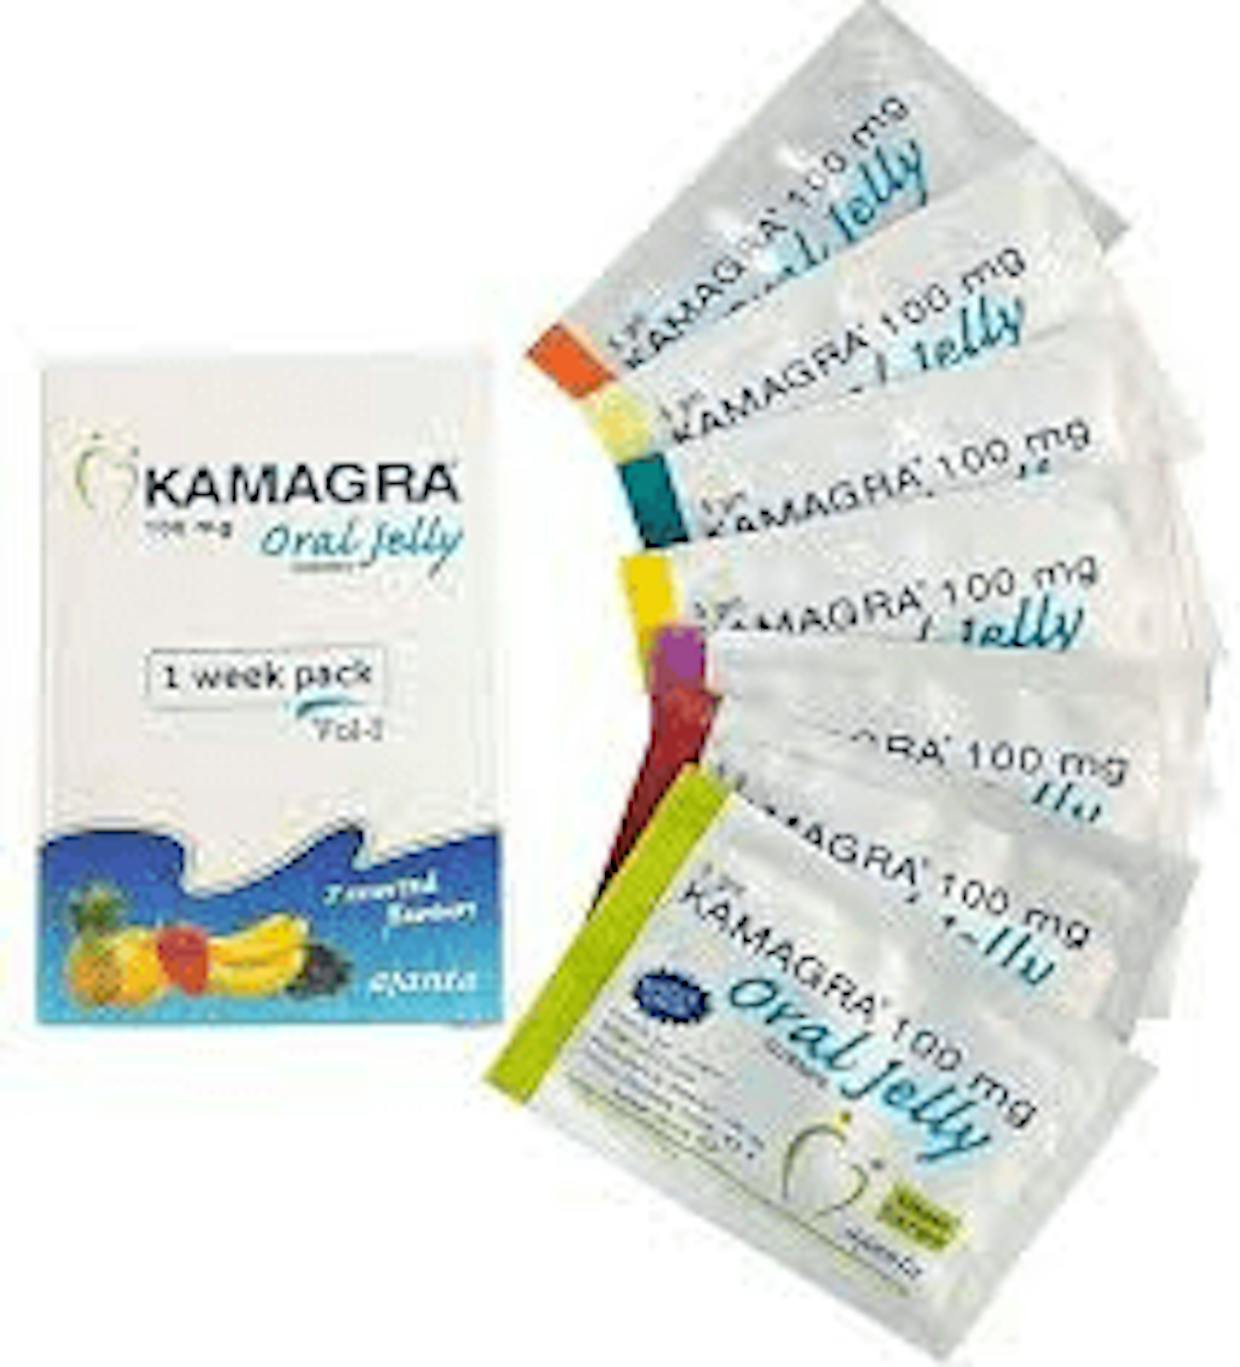 Buy Kamagra Oral Jelly in Australia | Viagra jelly